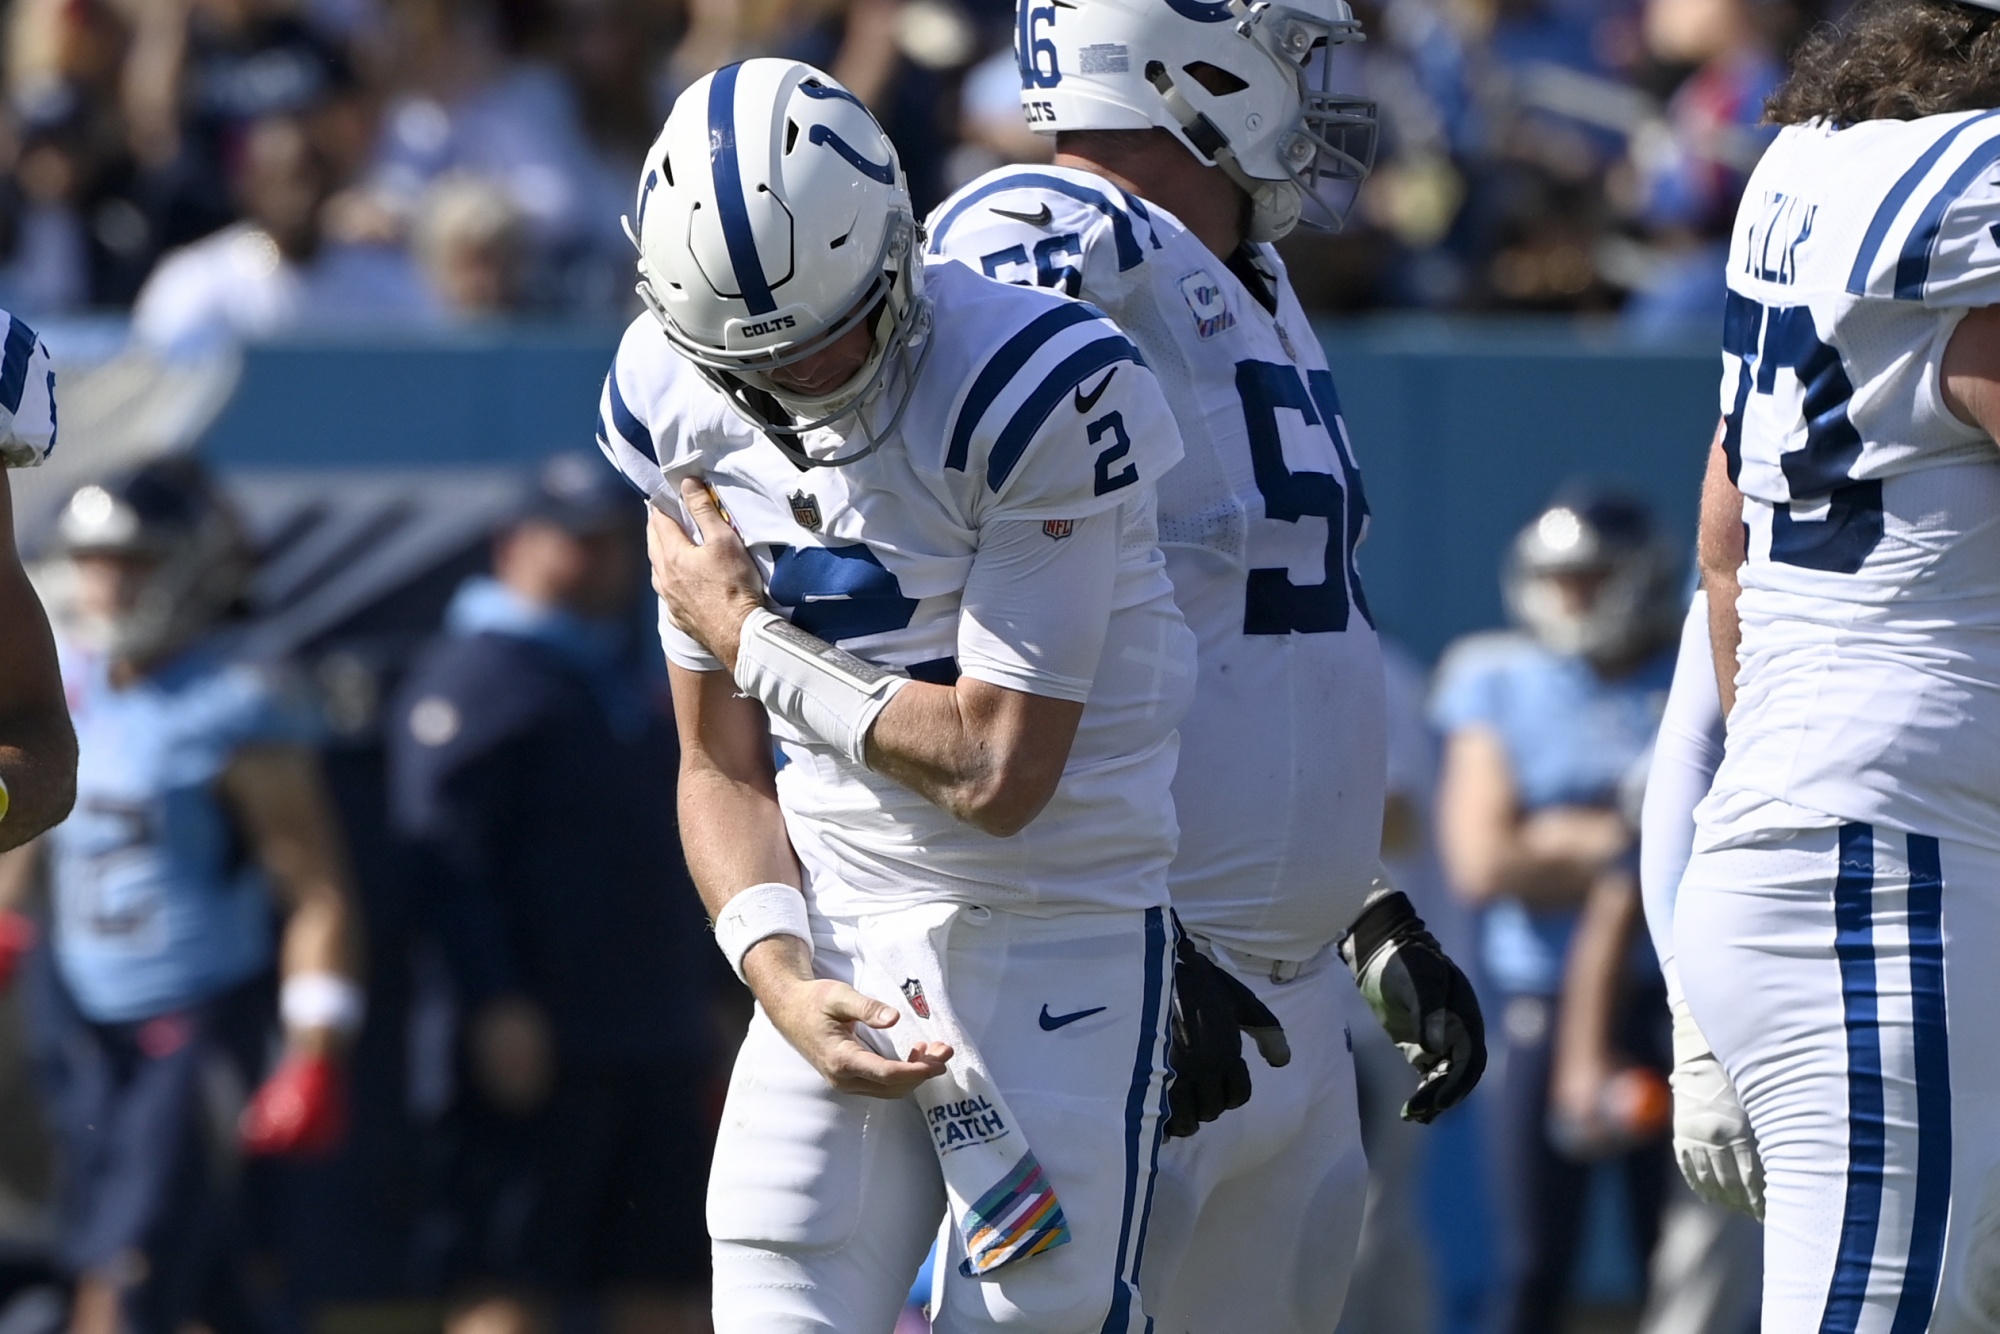 Colts Bench Injured QB Matt Ryan in Favor of Sam Ehlinger - Bloomberg